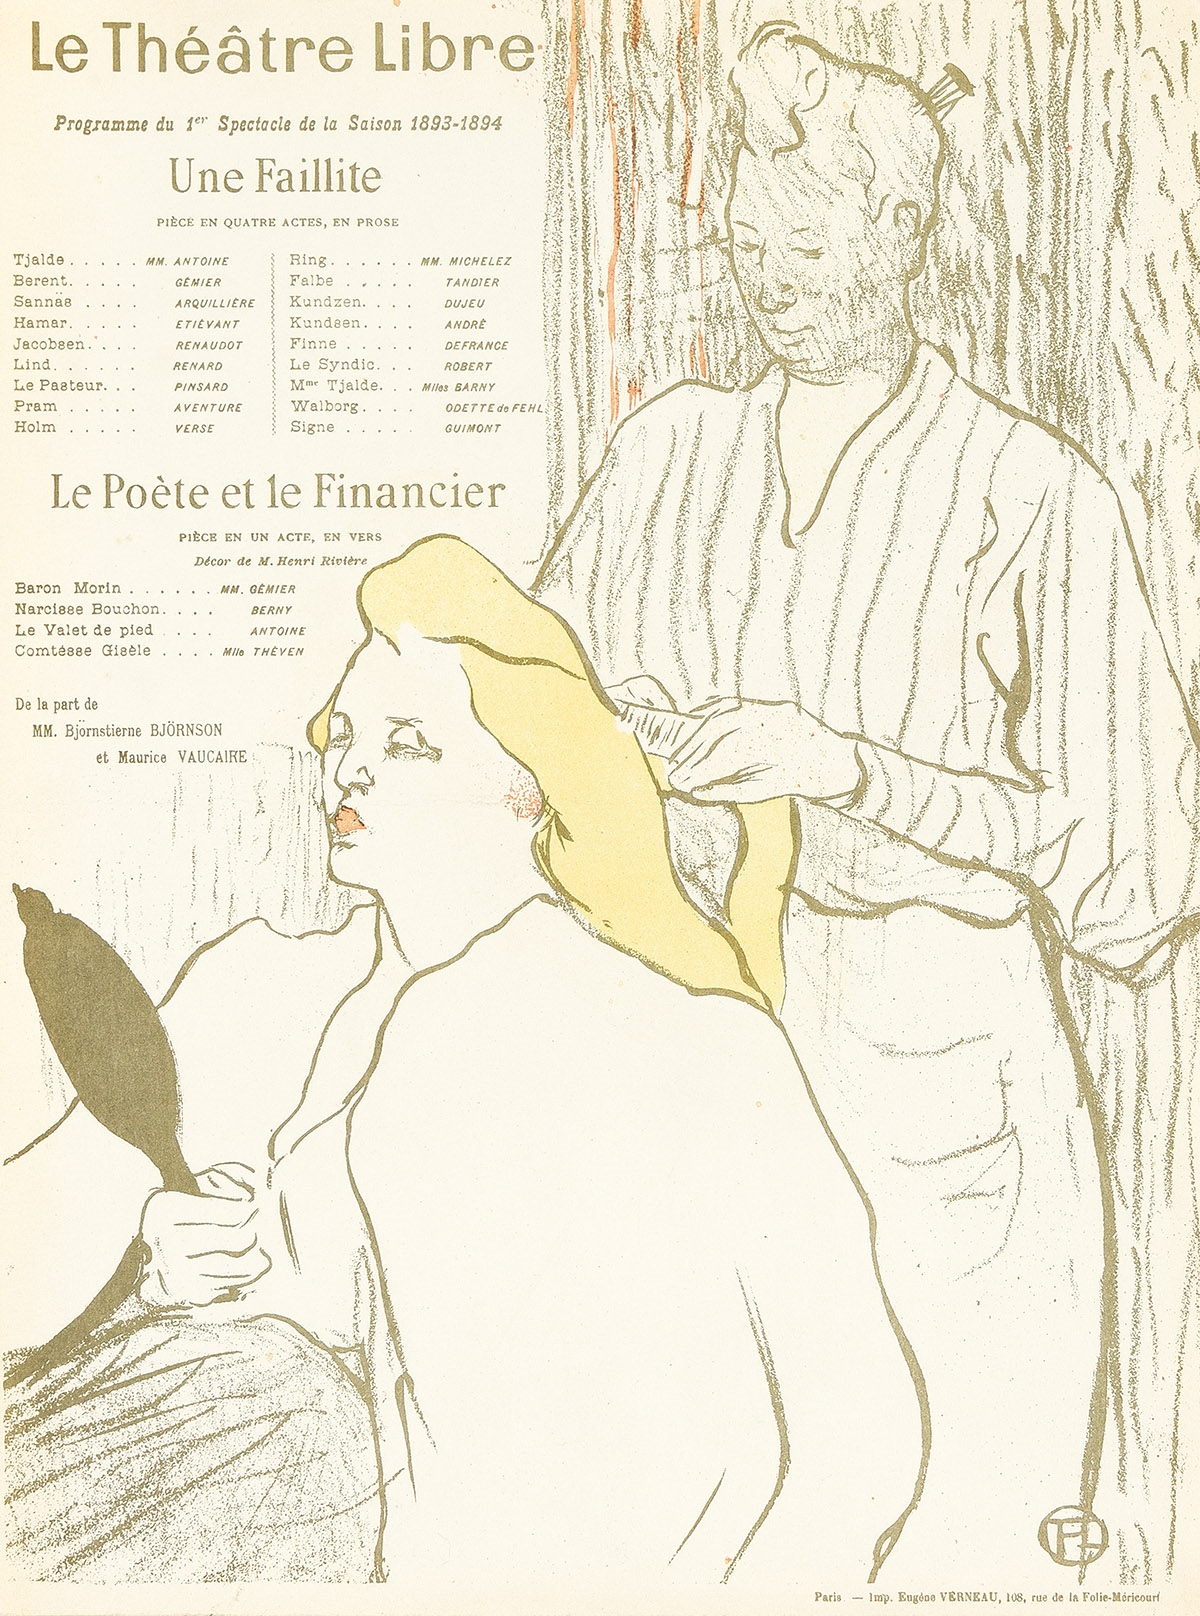 LE THÉÂTRE LIBRE. by Henri de Toulouse-Lautrec, 1893